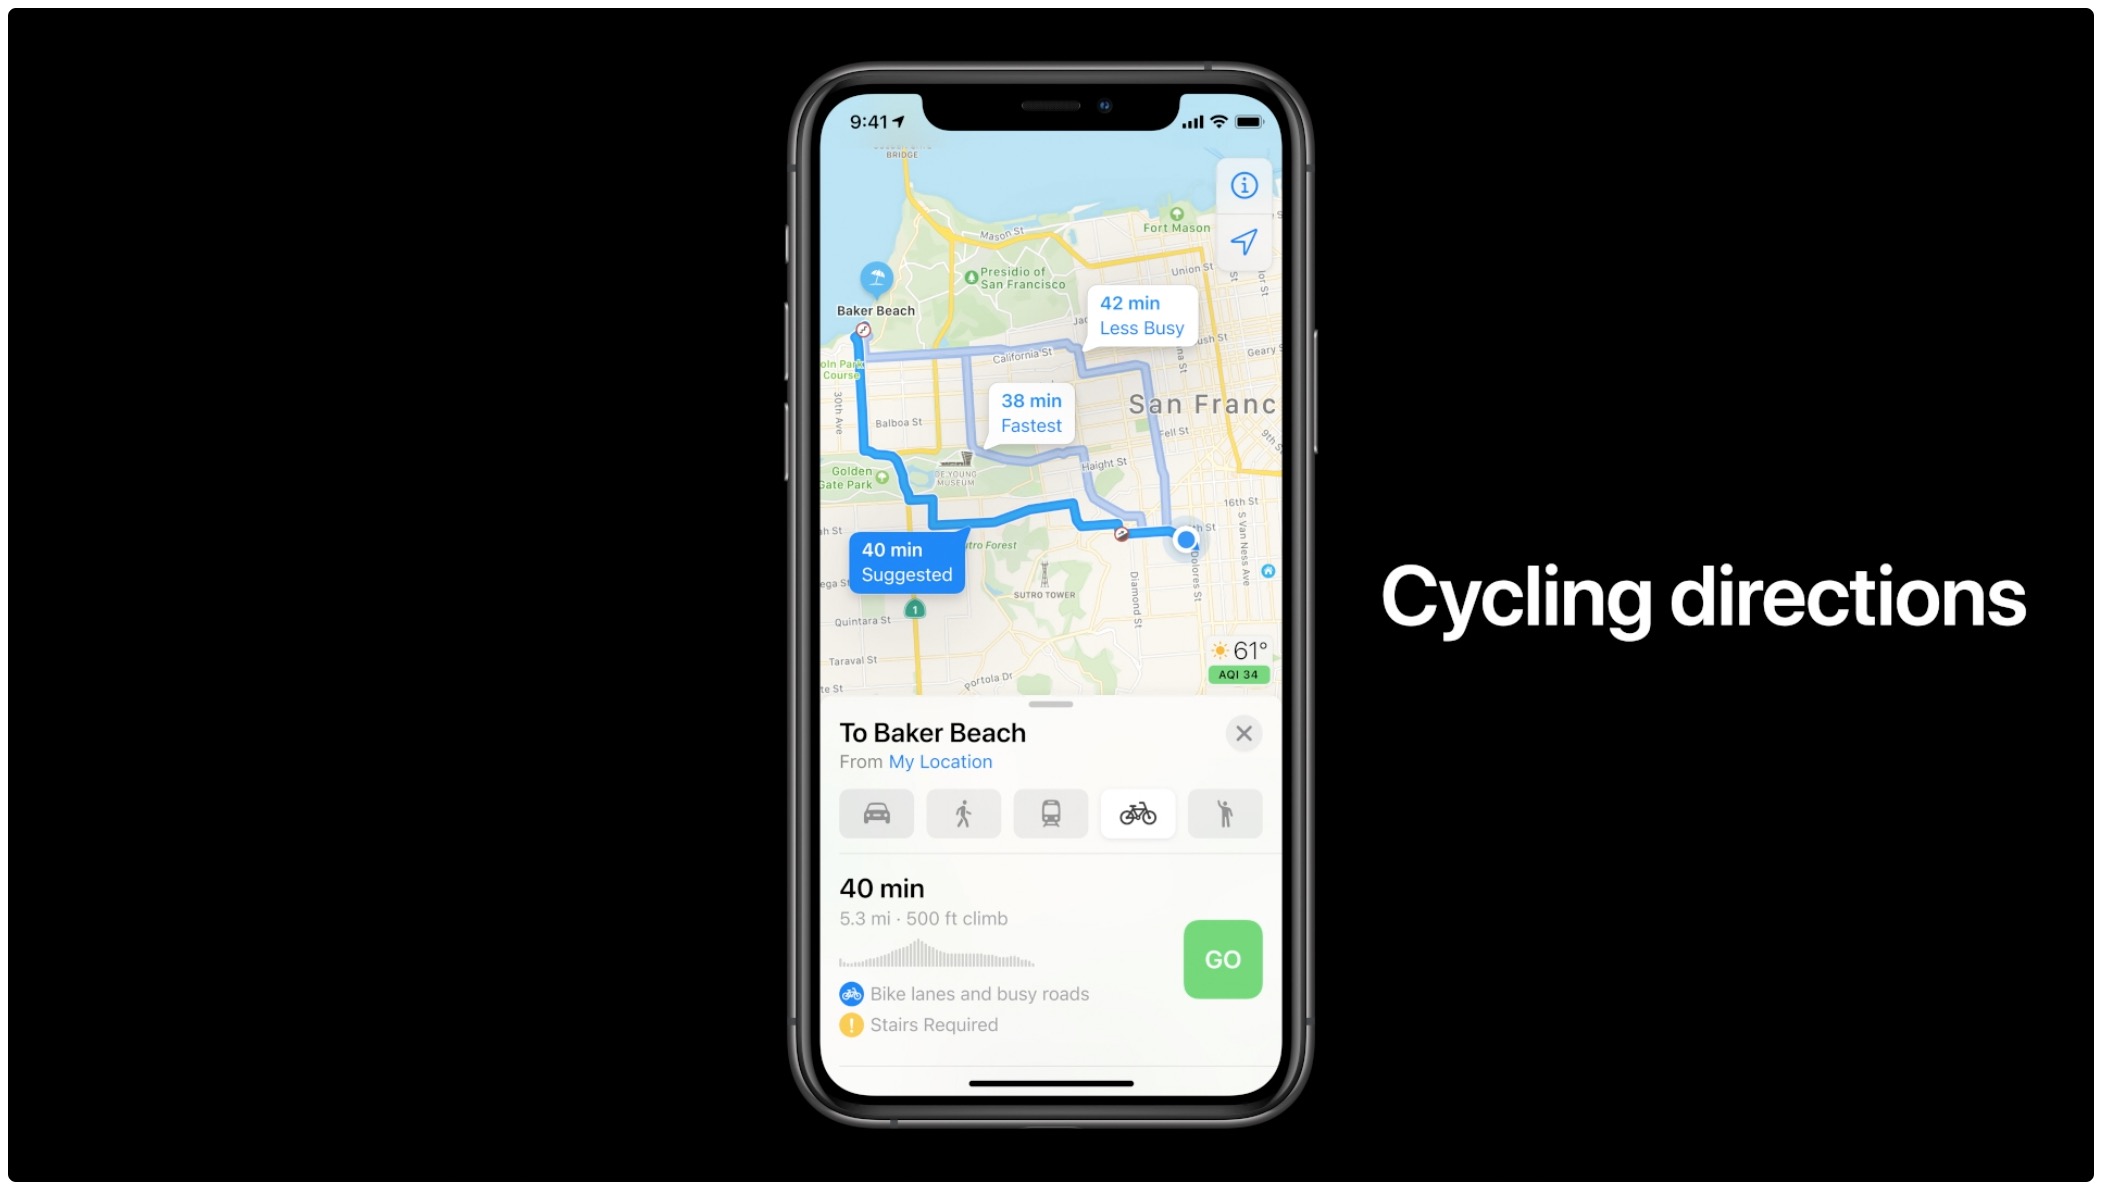 苹果的营销图片在苹果地图上展示了iPhone上的骑行路线